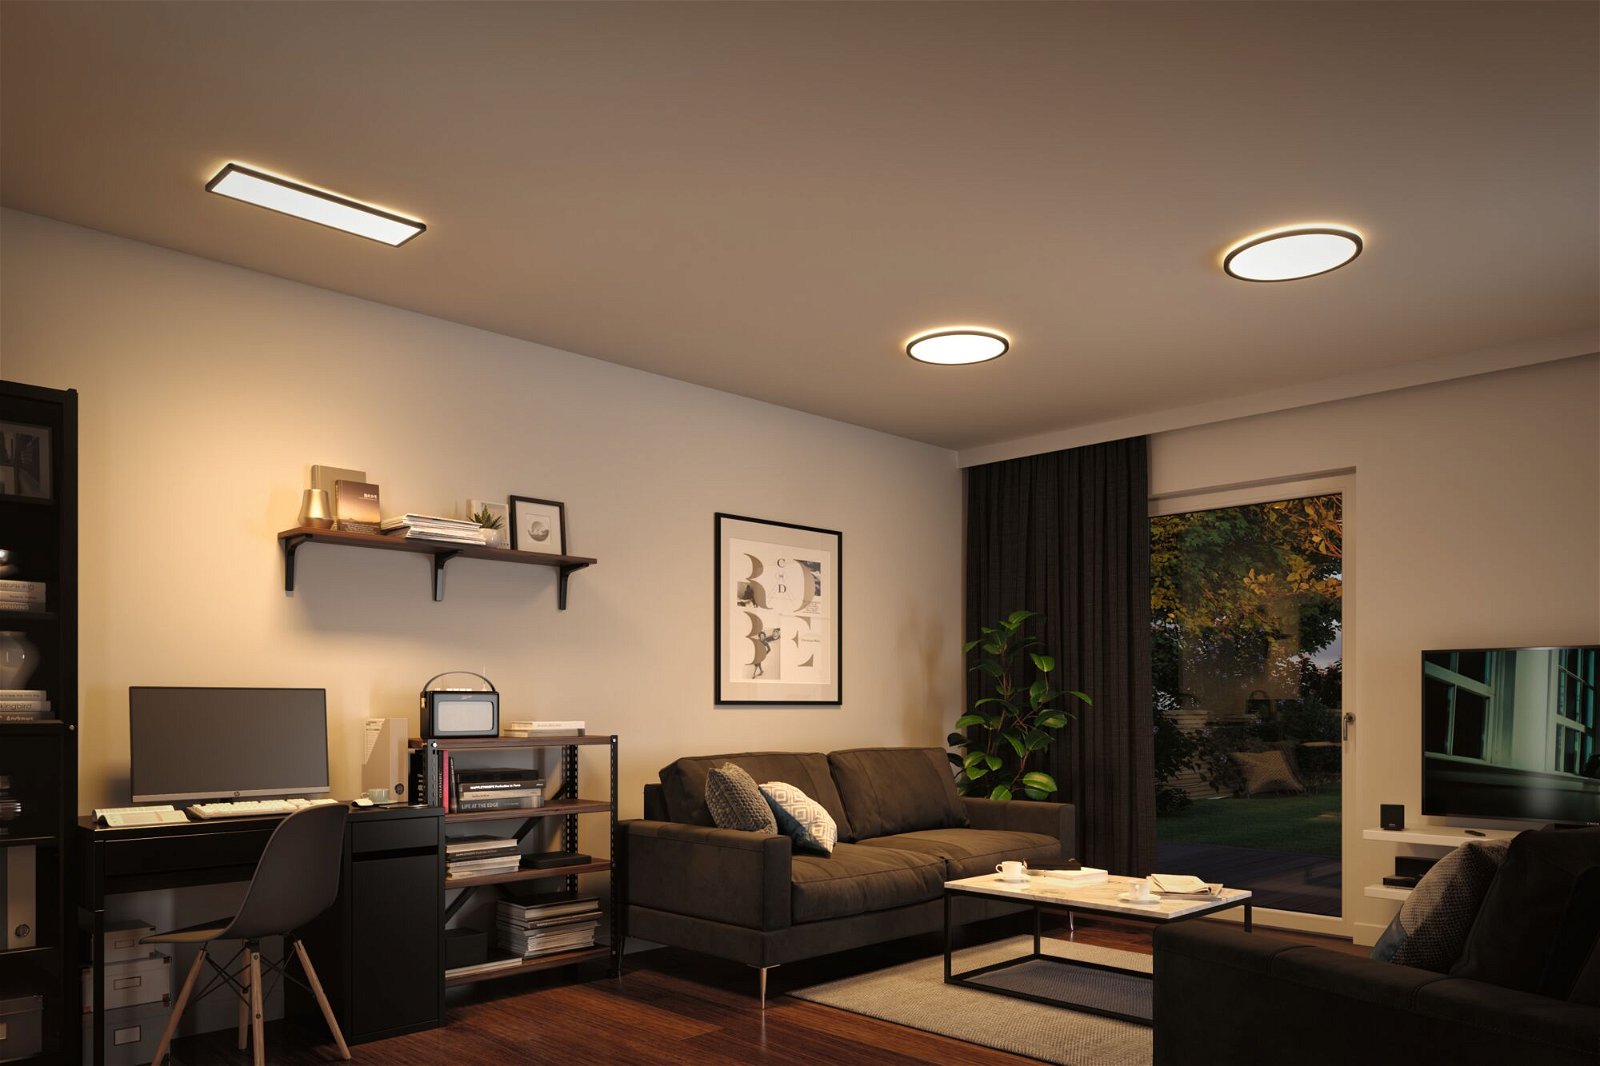 Panneau LED 3-Step-Dim Atria Shine Backlight carré 420x420mm 22W 2200lm 3000K Noir gradable